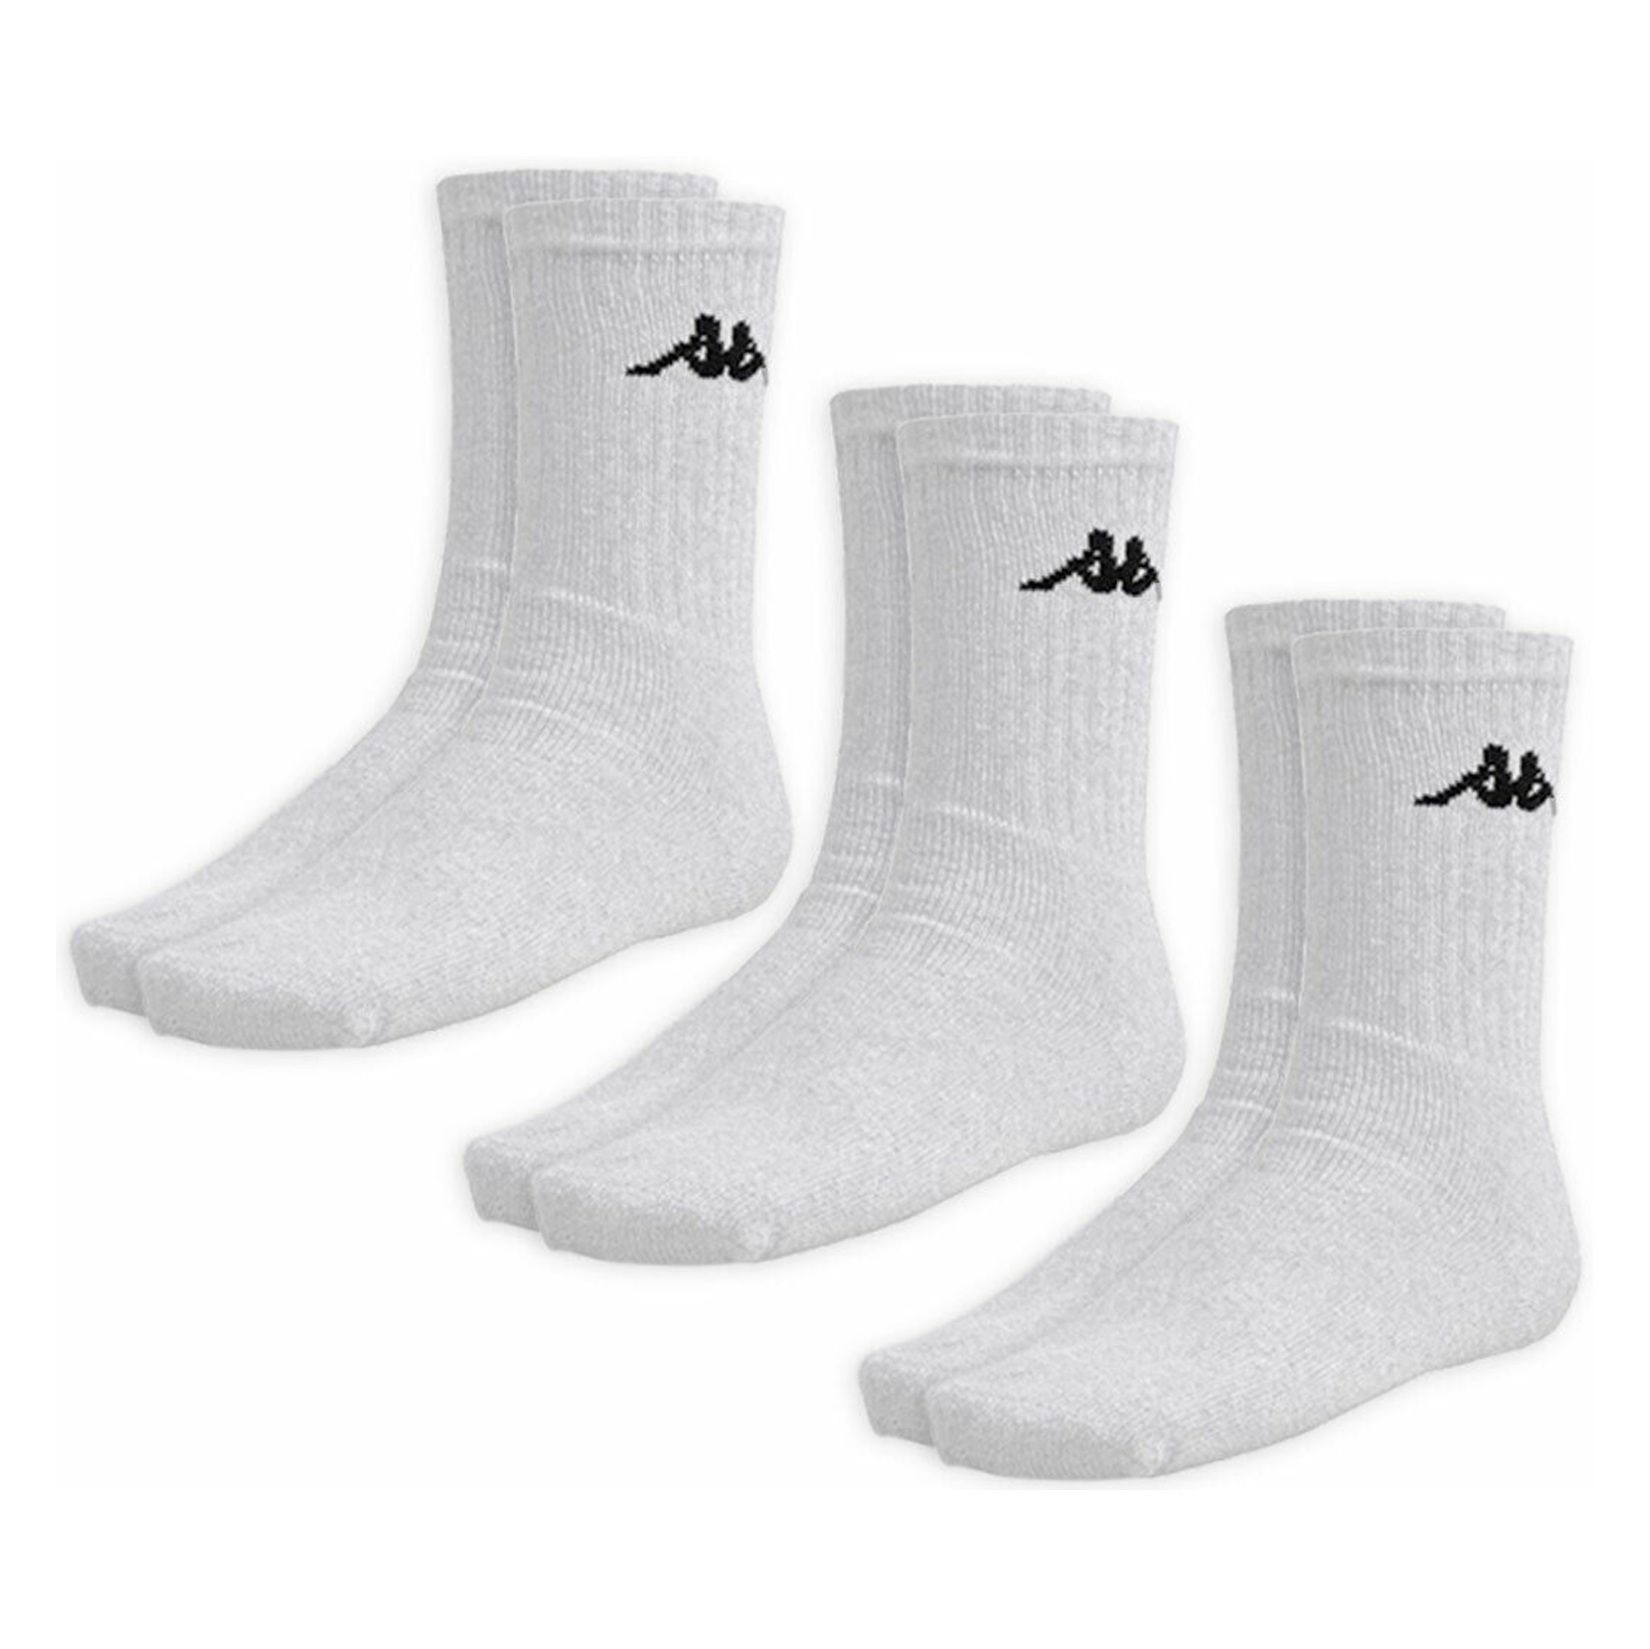 Kappa Sports Sock (3 Pack) - Kitlocker.com